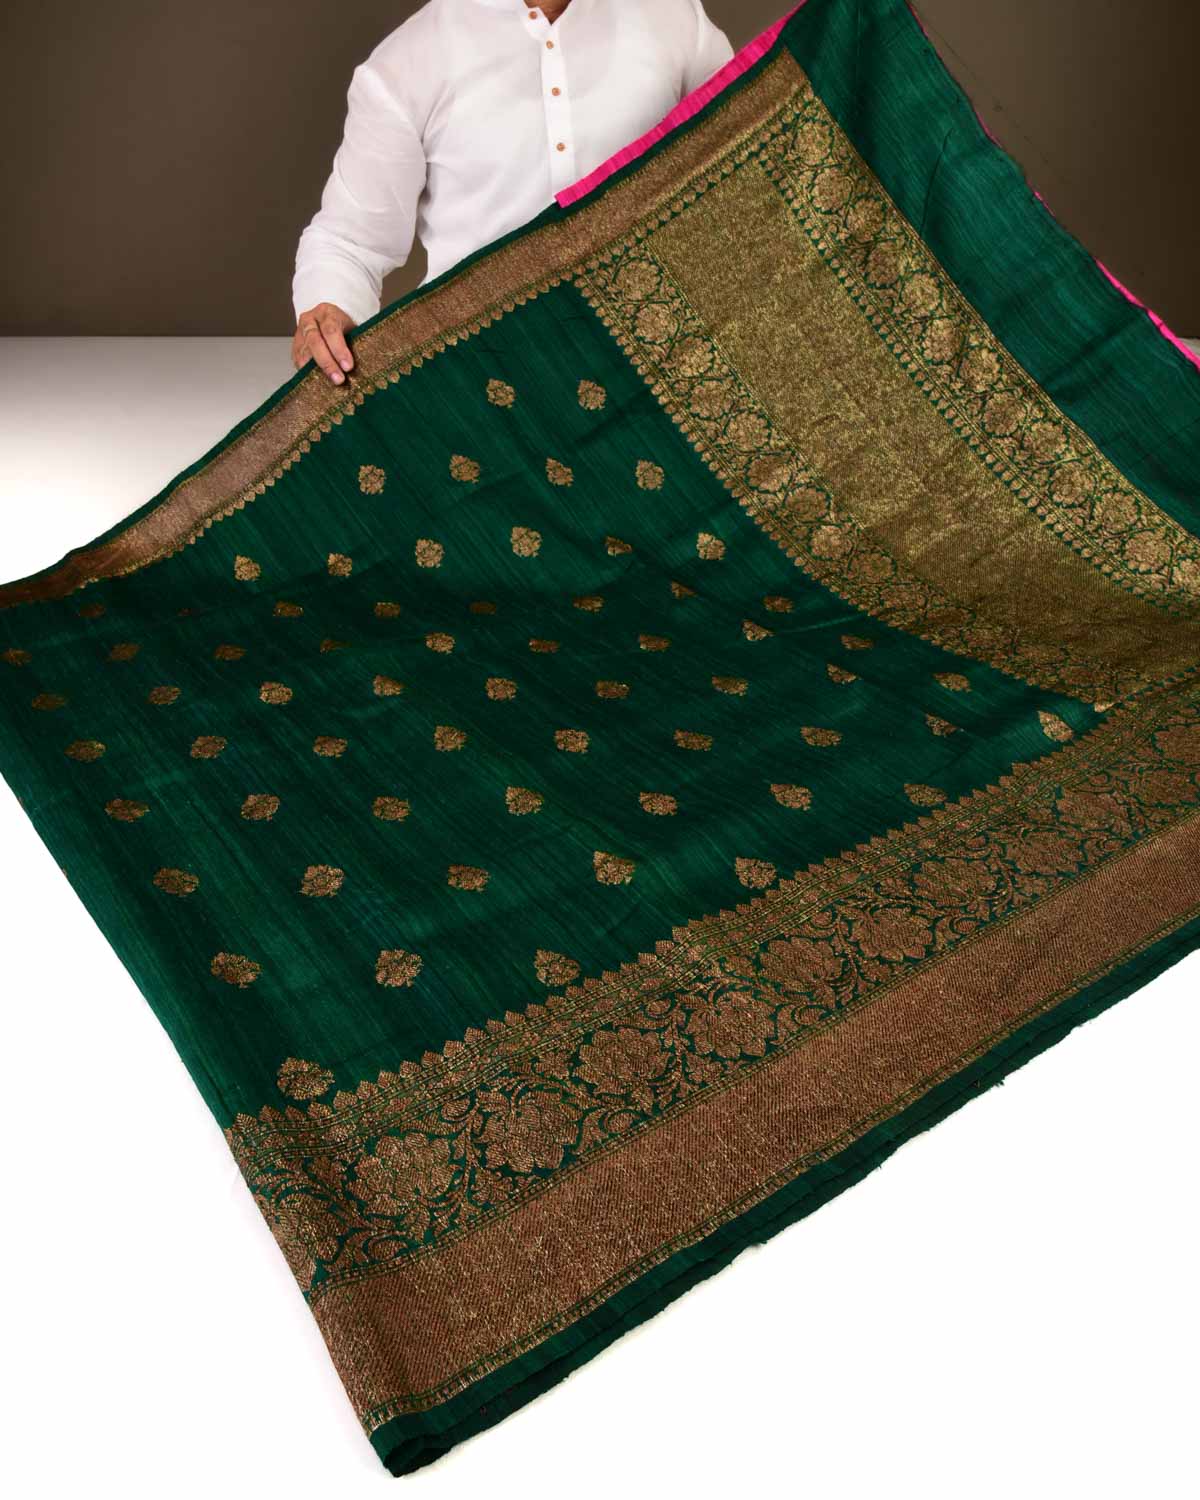 Forest Green Banarasi Antique Zari Buti Kadhuan Brocade Handwoven Raw Silk Saree with Pink Contrast Blouse-HolyWeaves